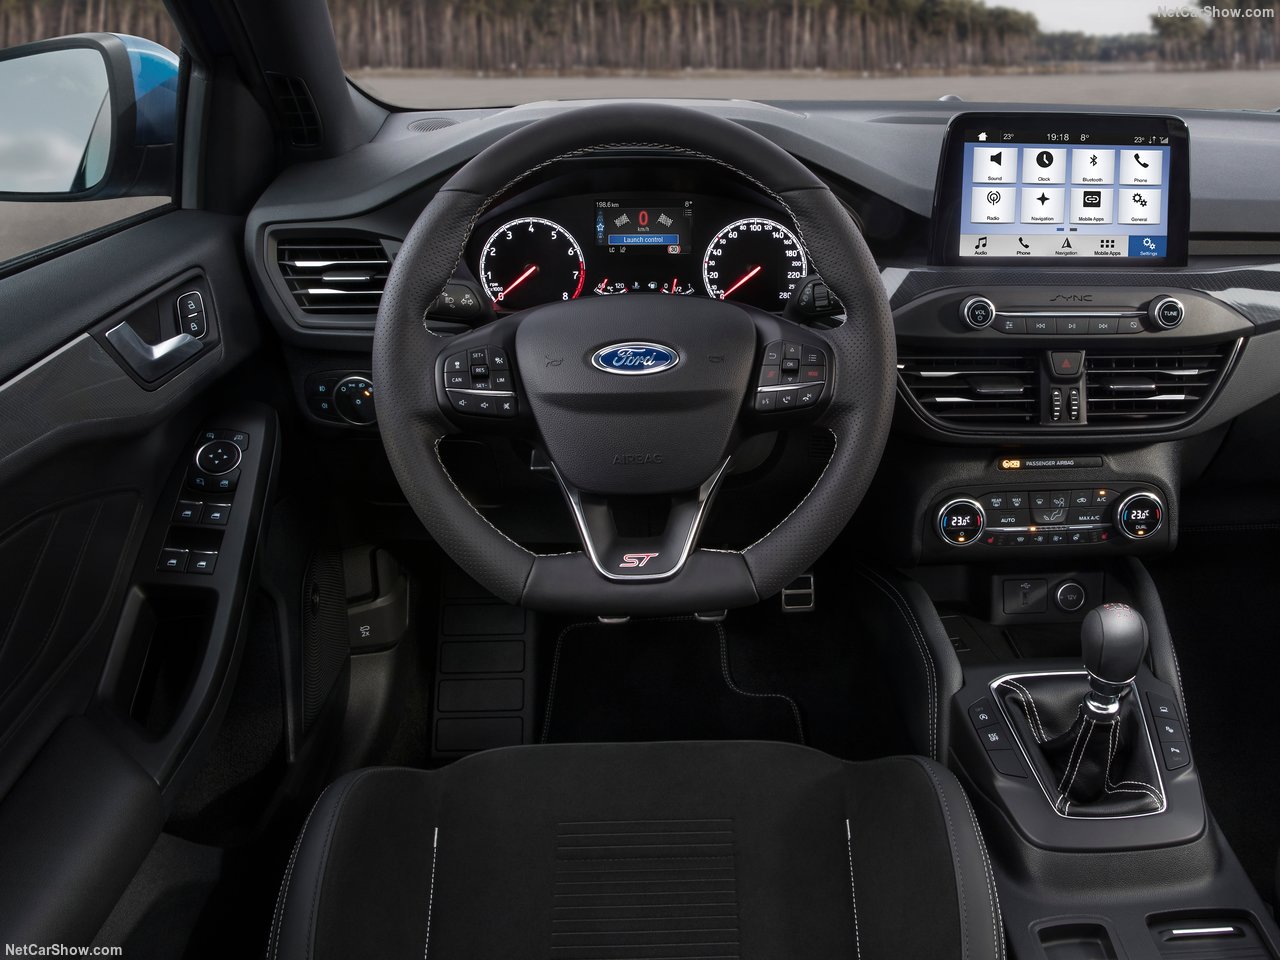 Ford Focus ST tanıtıldı! Ford Focus ST’nin motor ve donanım özellikleri ne?